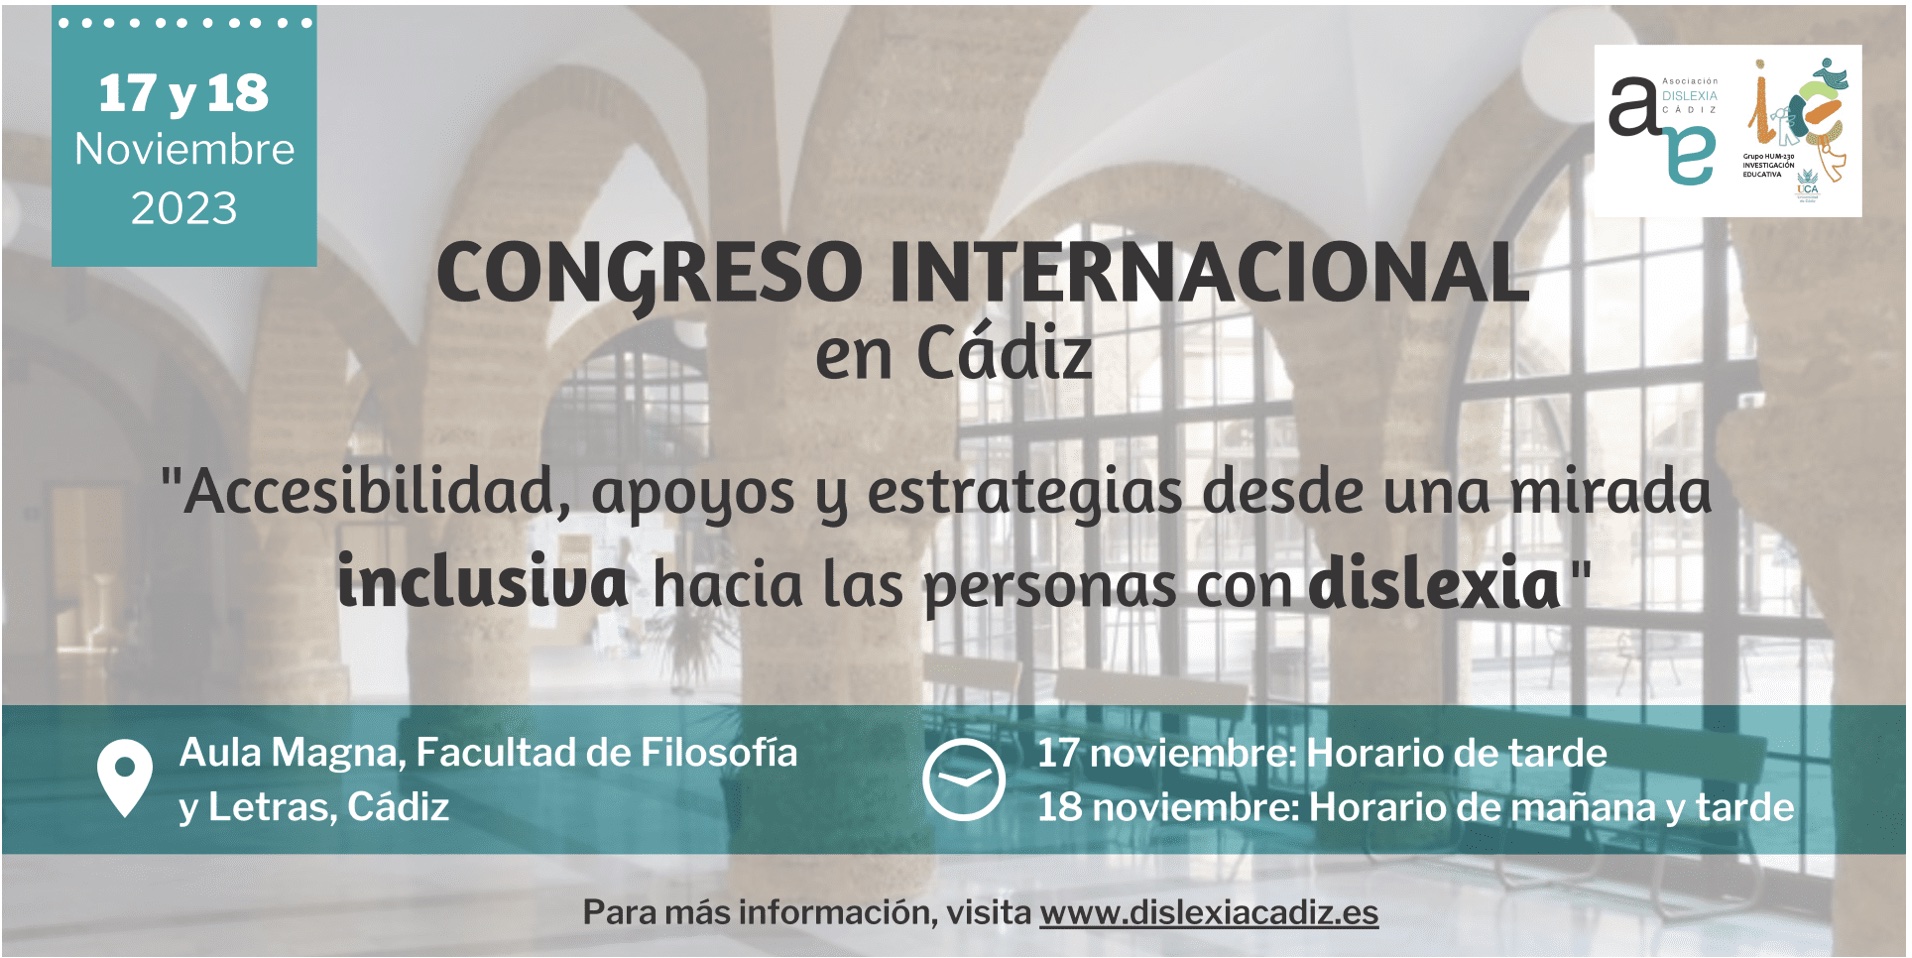 Congreso Internacional en Cádiz: Accesibilidad, apoyos y estrategias desde una mirada inclusiva h...